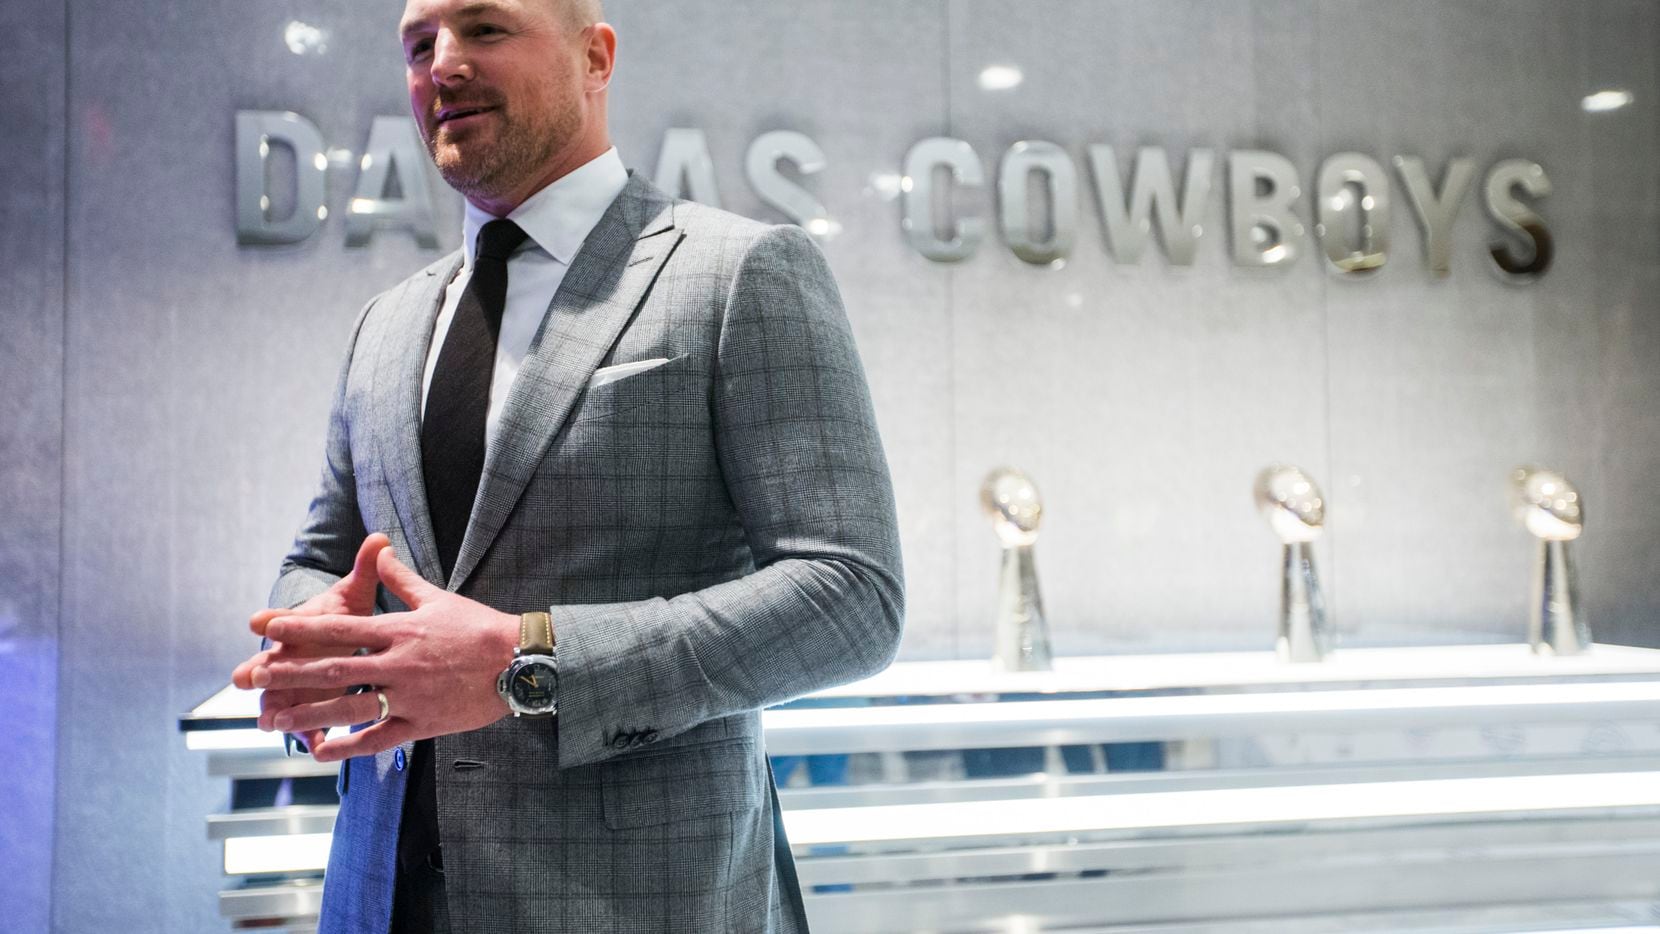 El exjugador de los Cowboys de Dallas, Jason Witten, fue nombrado entrenador en jefe del...